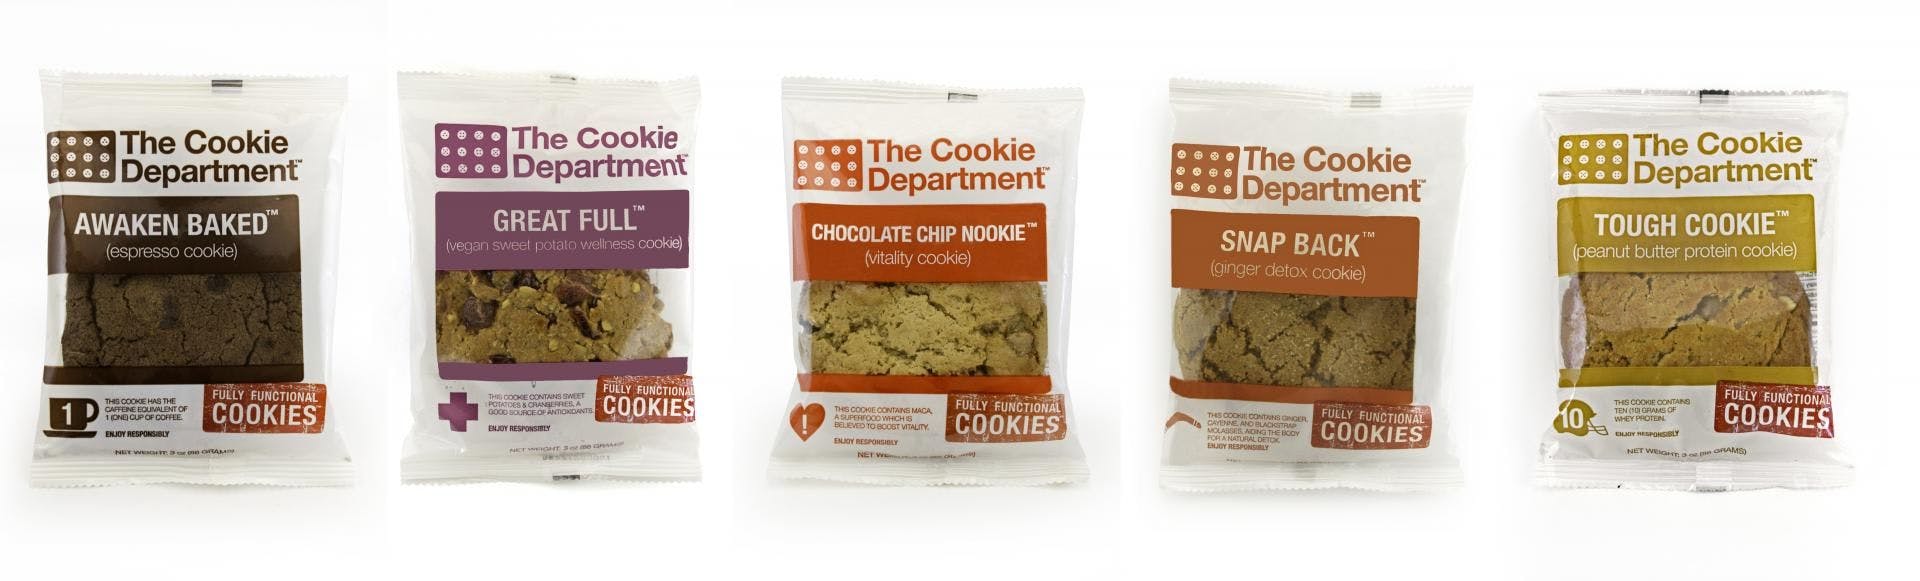 Expo West Sneak Peak: Probiotic Cookies